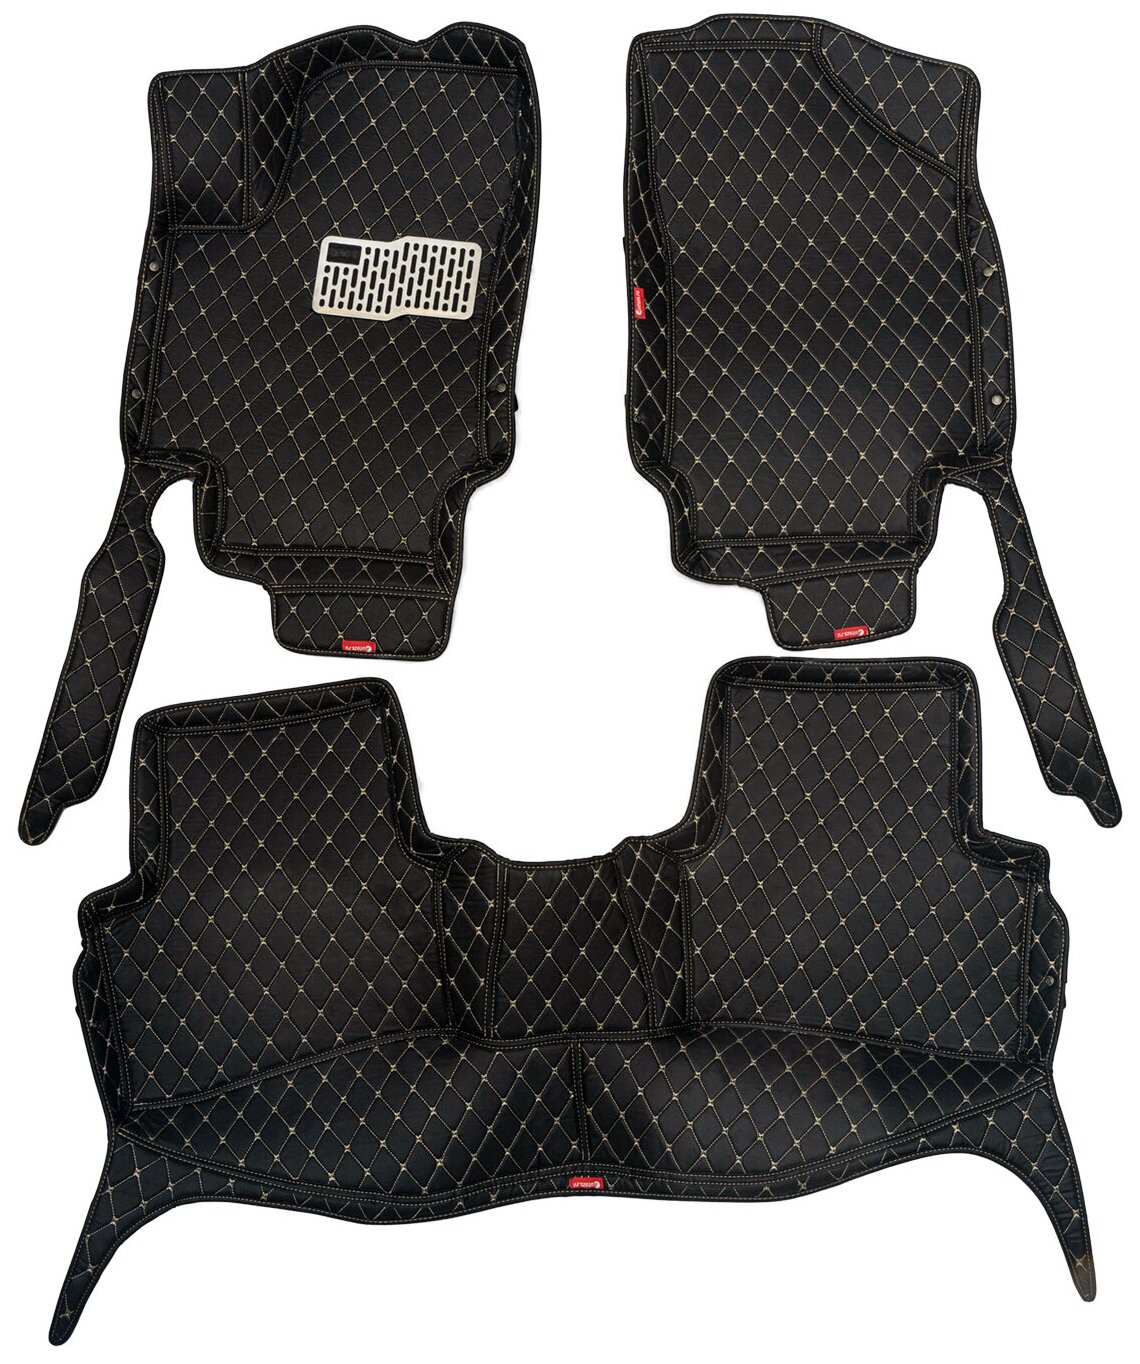 Кожаные 3D коврики Autozs Premium для Ford Mondeo IV (2007-2015) черные с бежевой строчкой / Форд Мондео 4 (2007-2015) 3Д ковры в автомобиль